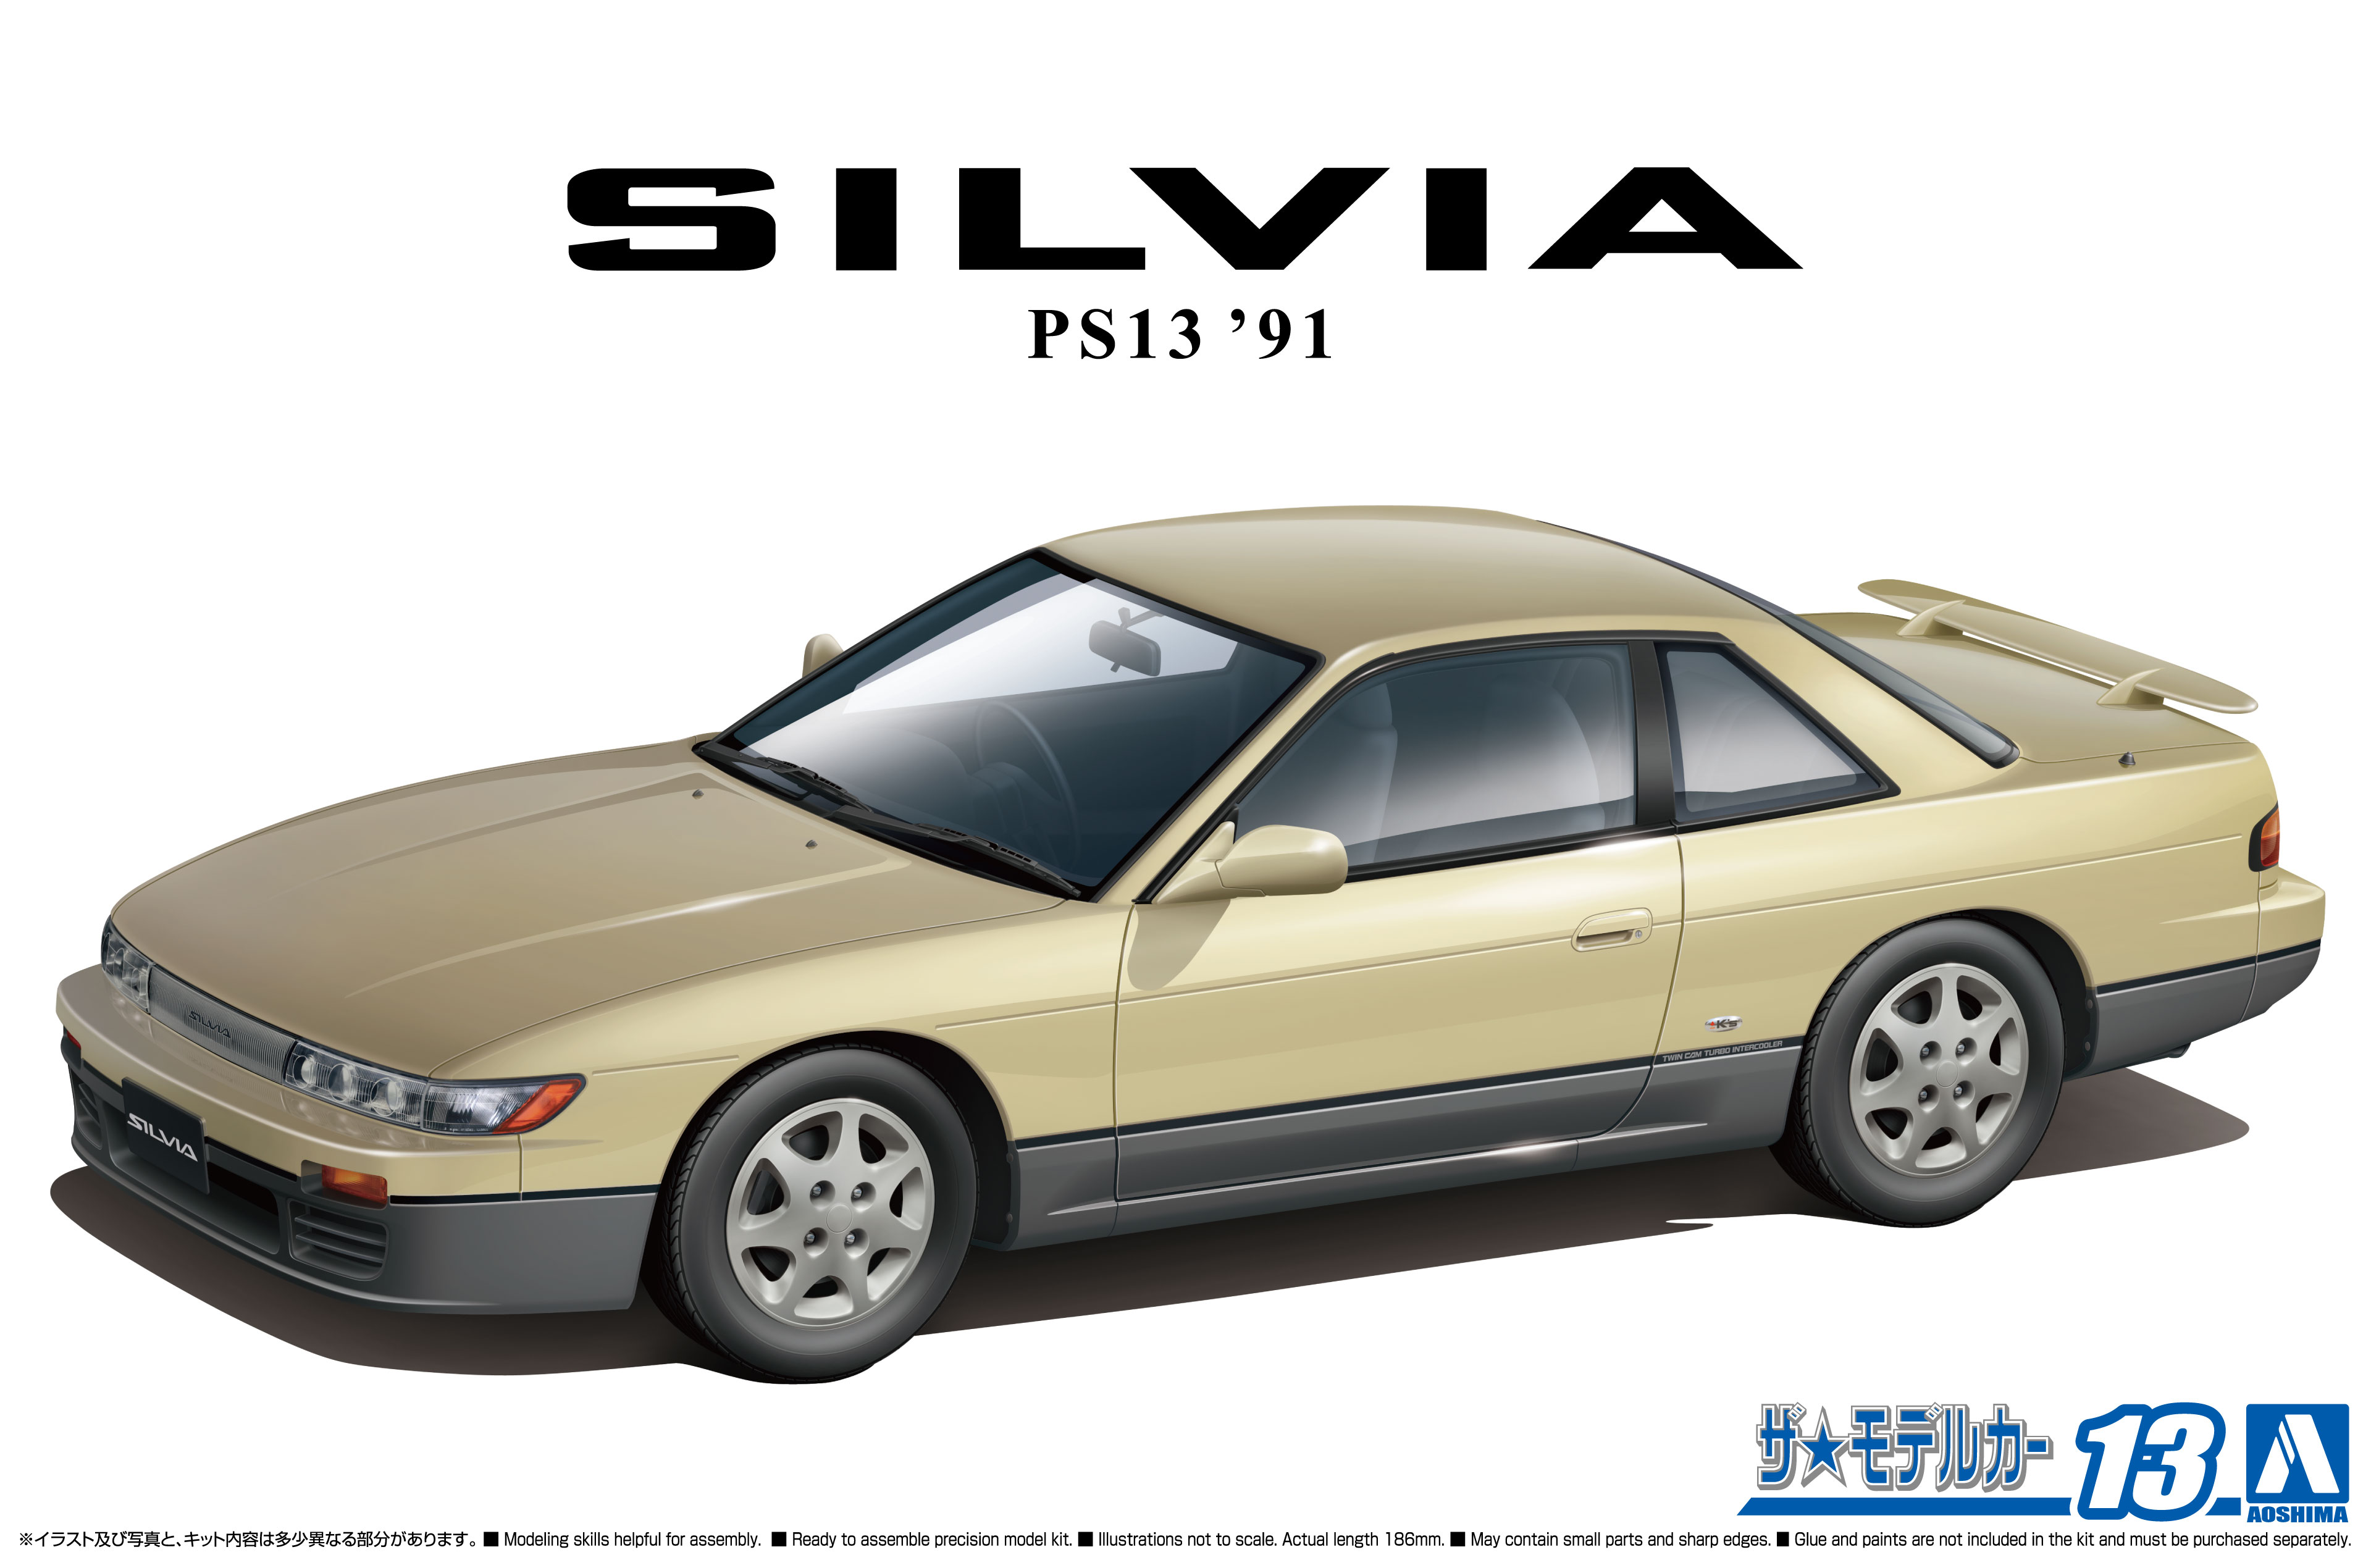 1:24 Scale Aoshima Nissan Silvia PS13 K's 1991 Model Kit - Kent Models